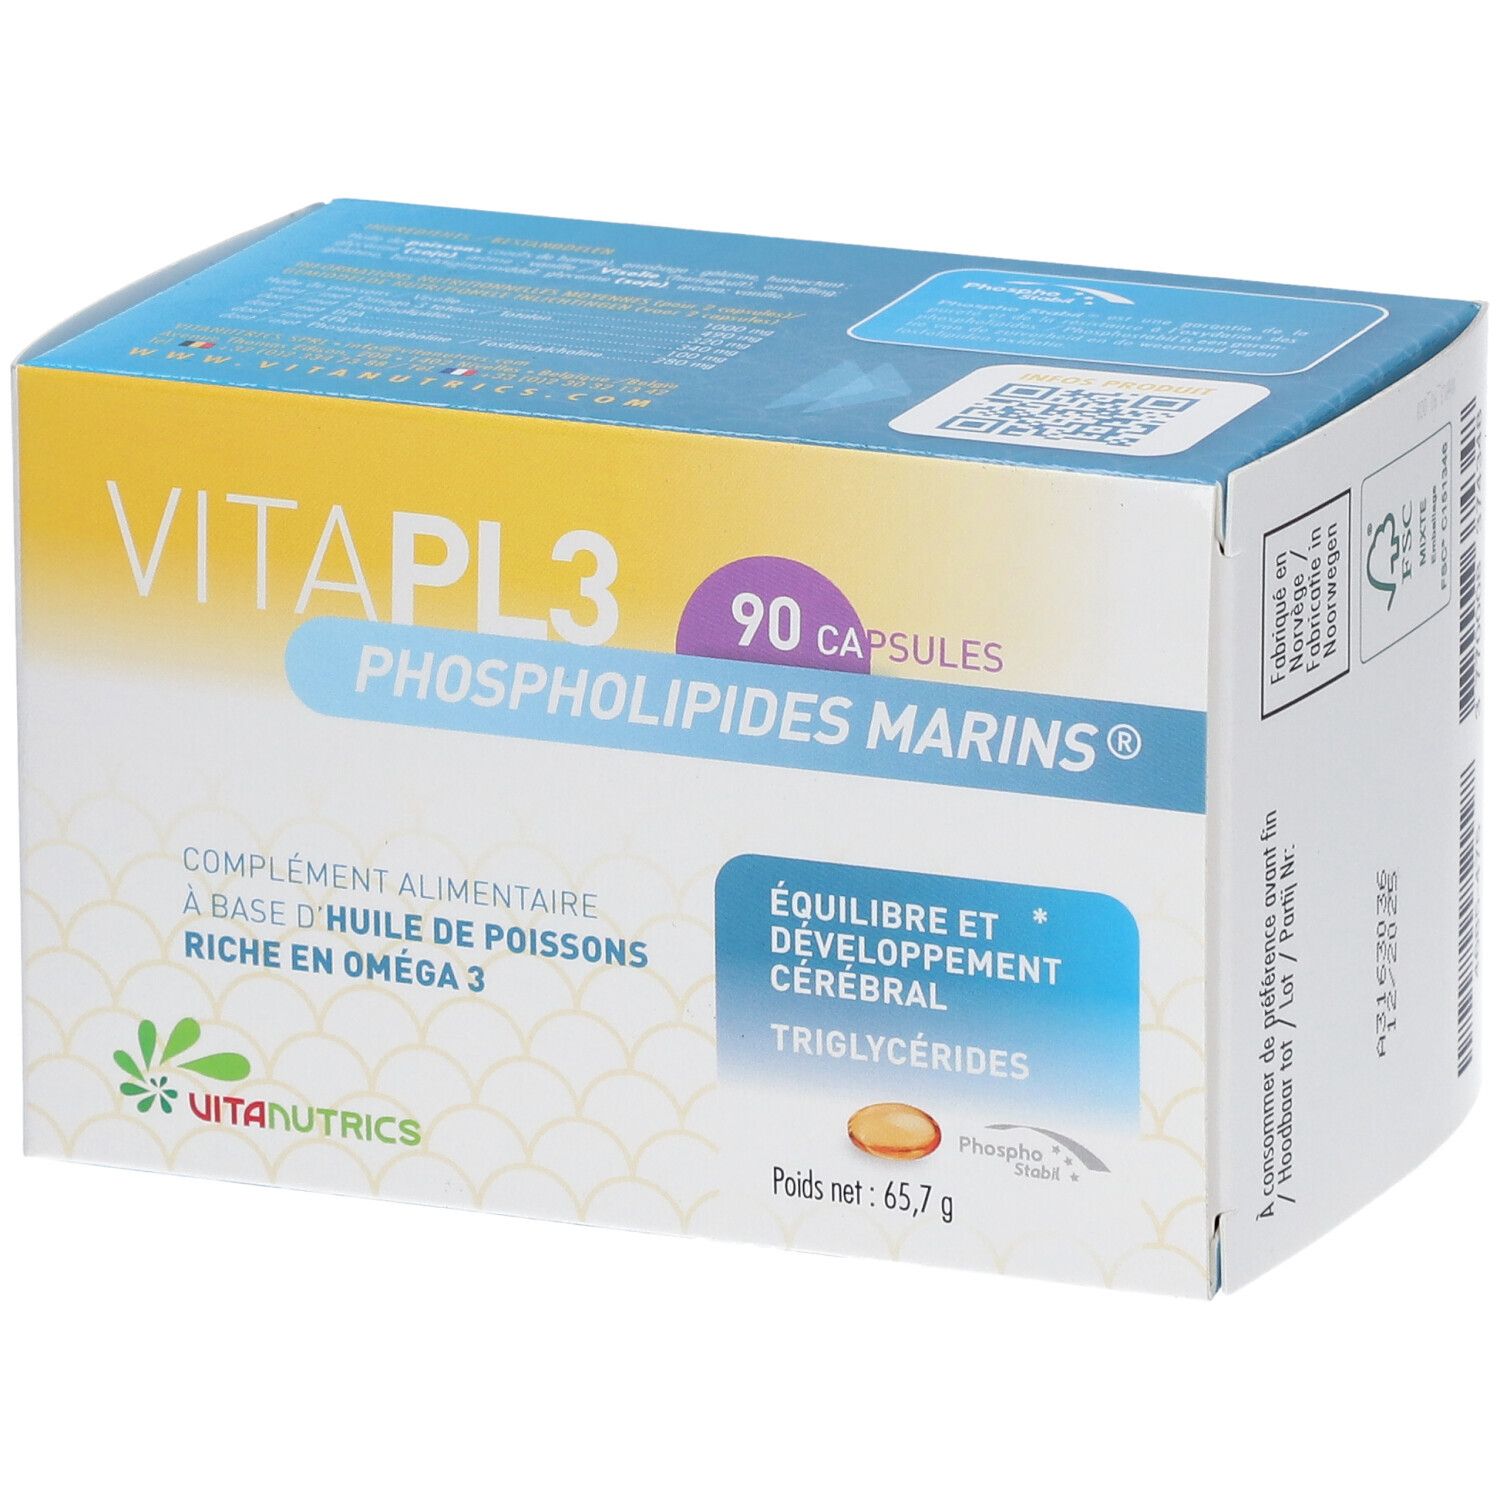 Vitapl3 Phospholipides Marins®